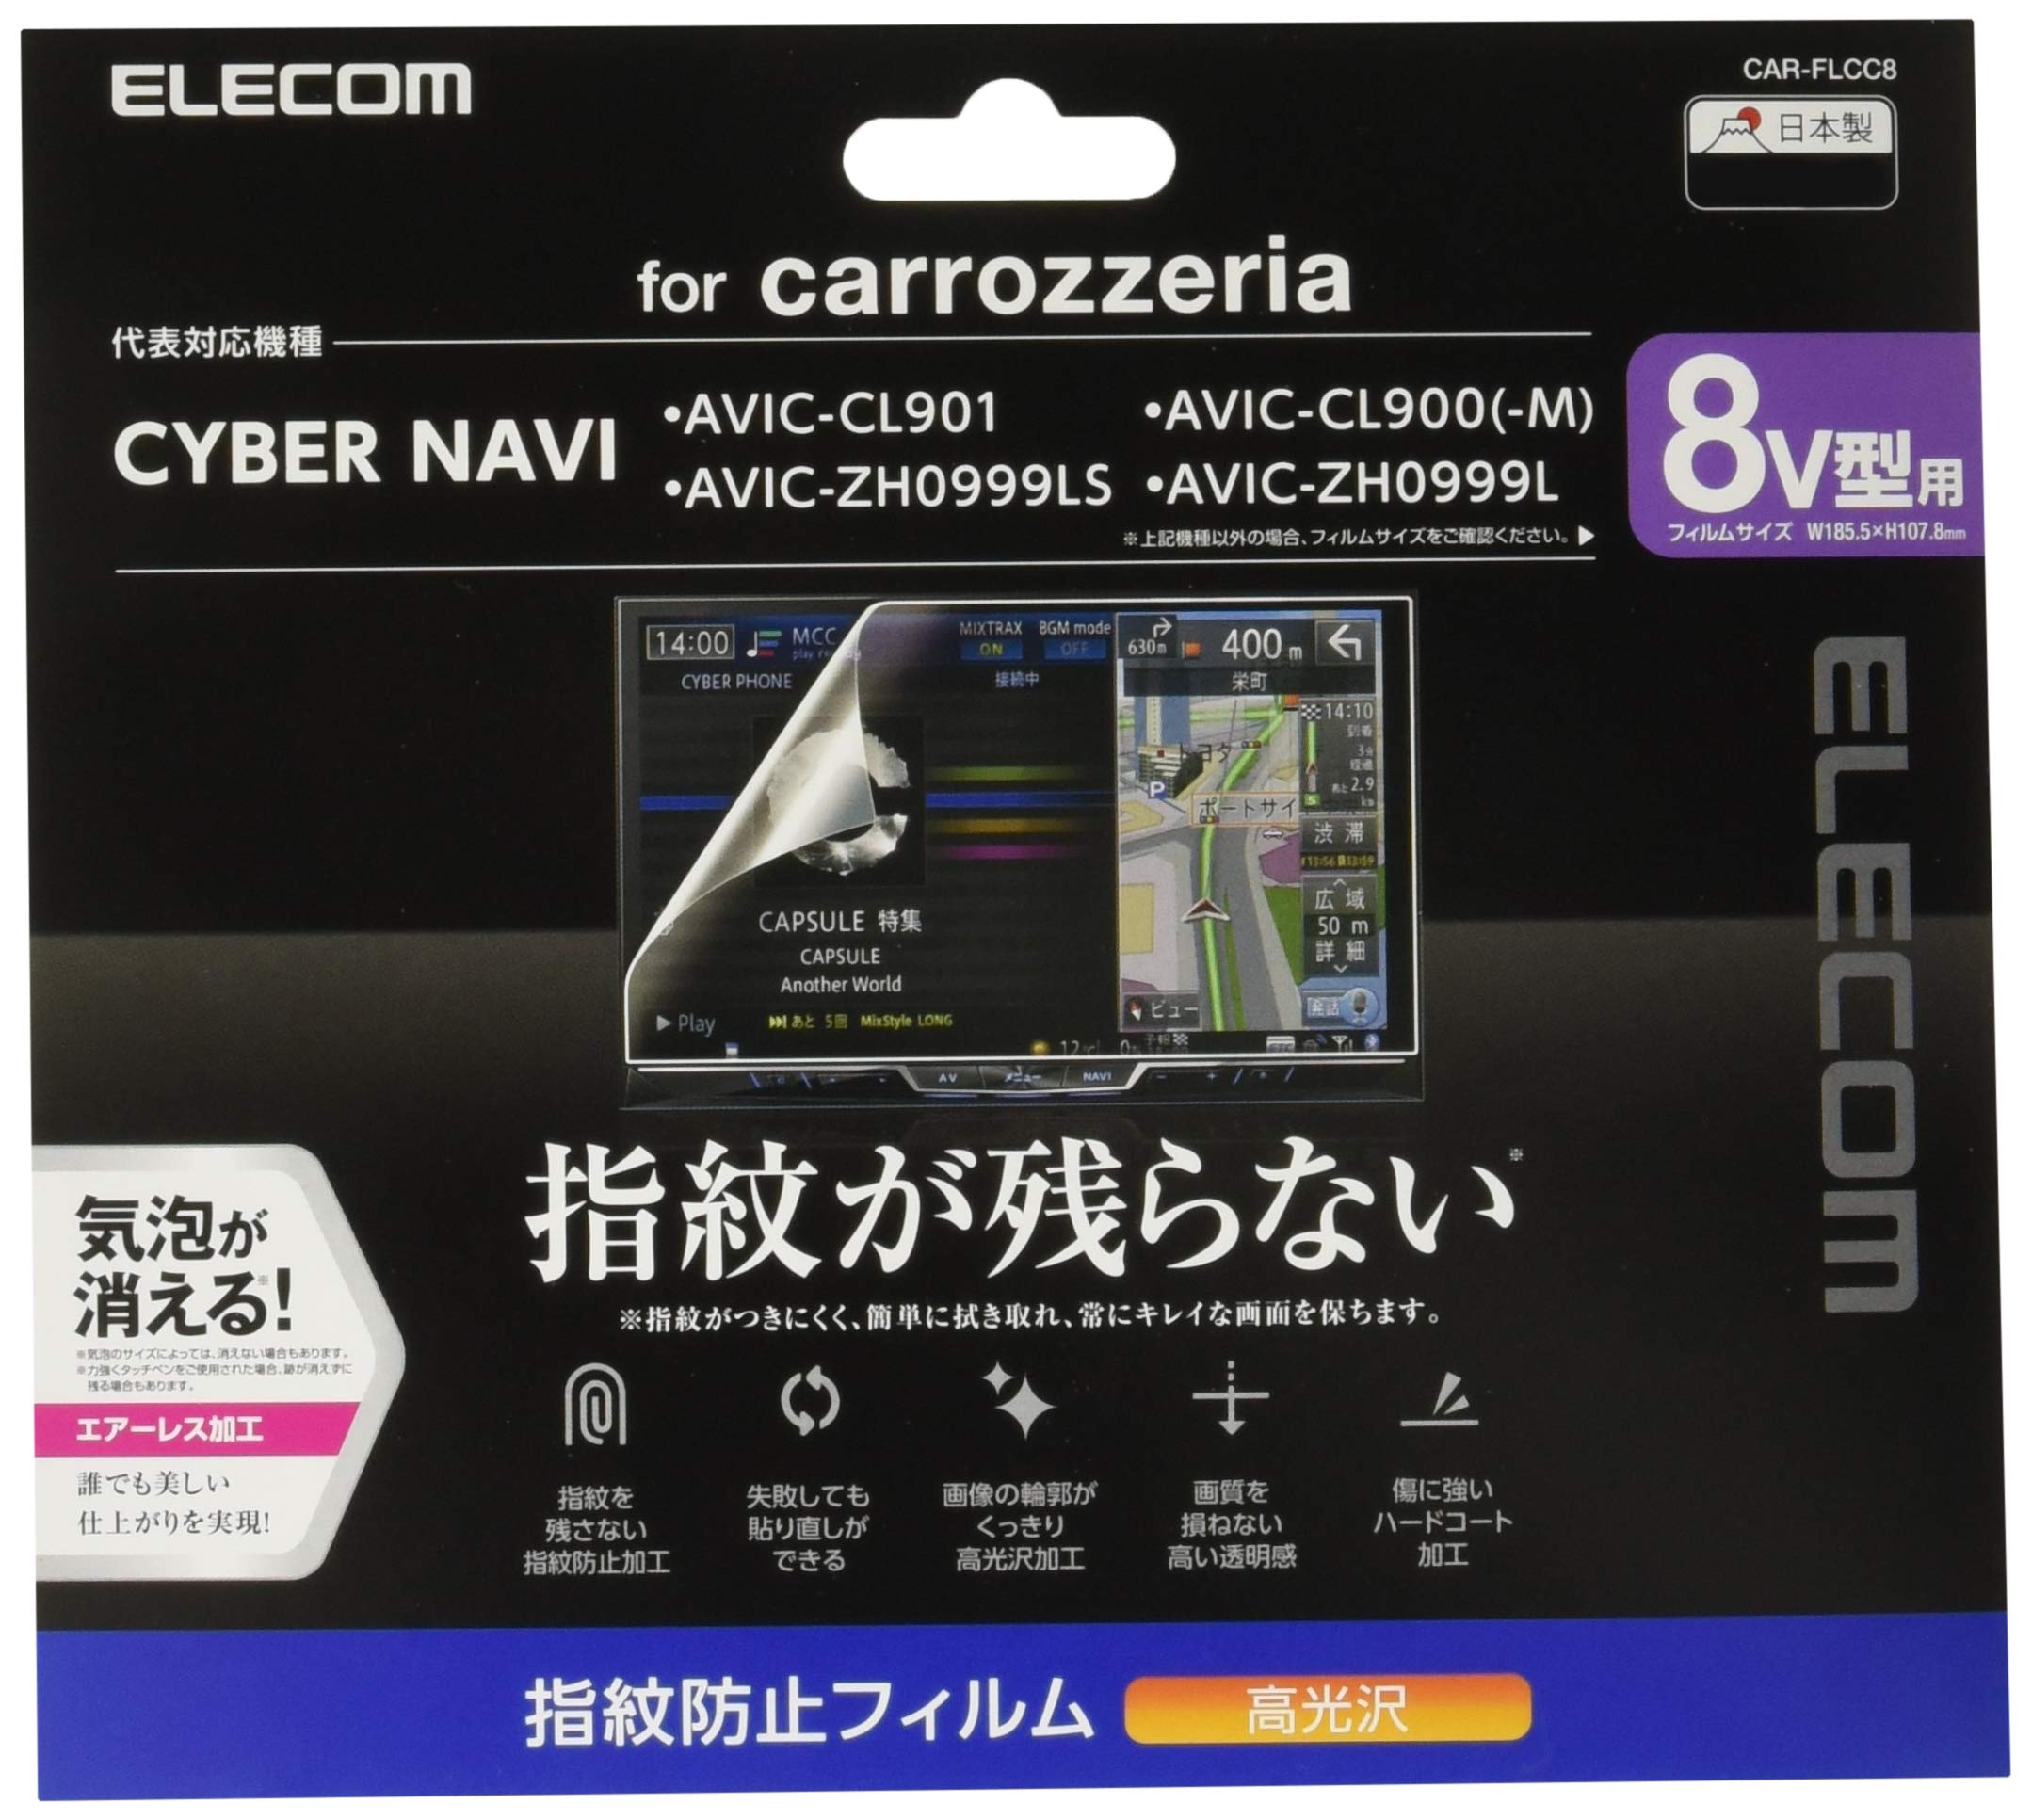 エレコム カーナビ 保護フィルム 8V型 指紋防止 高光沢 Pioneer carrozzeria CYBER NAVI対応 安心の日本製 CAR-FLCC8